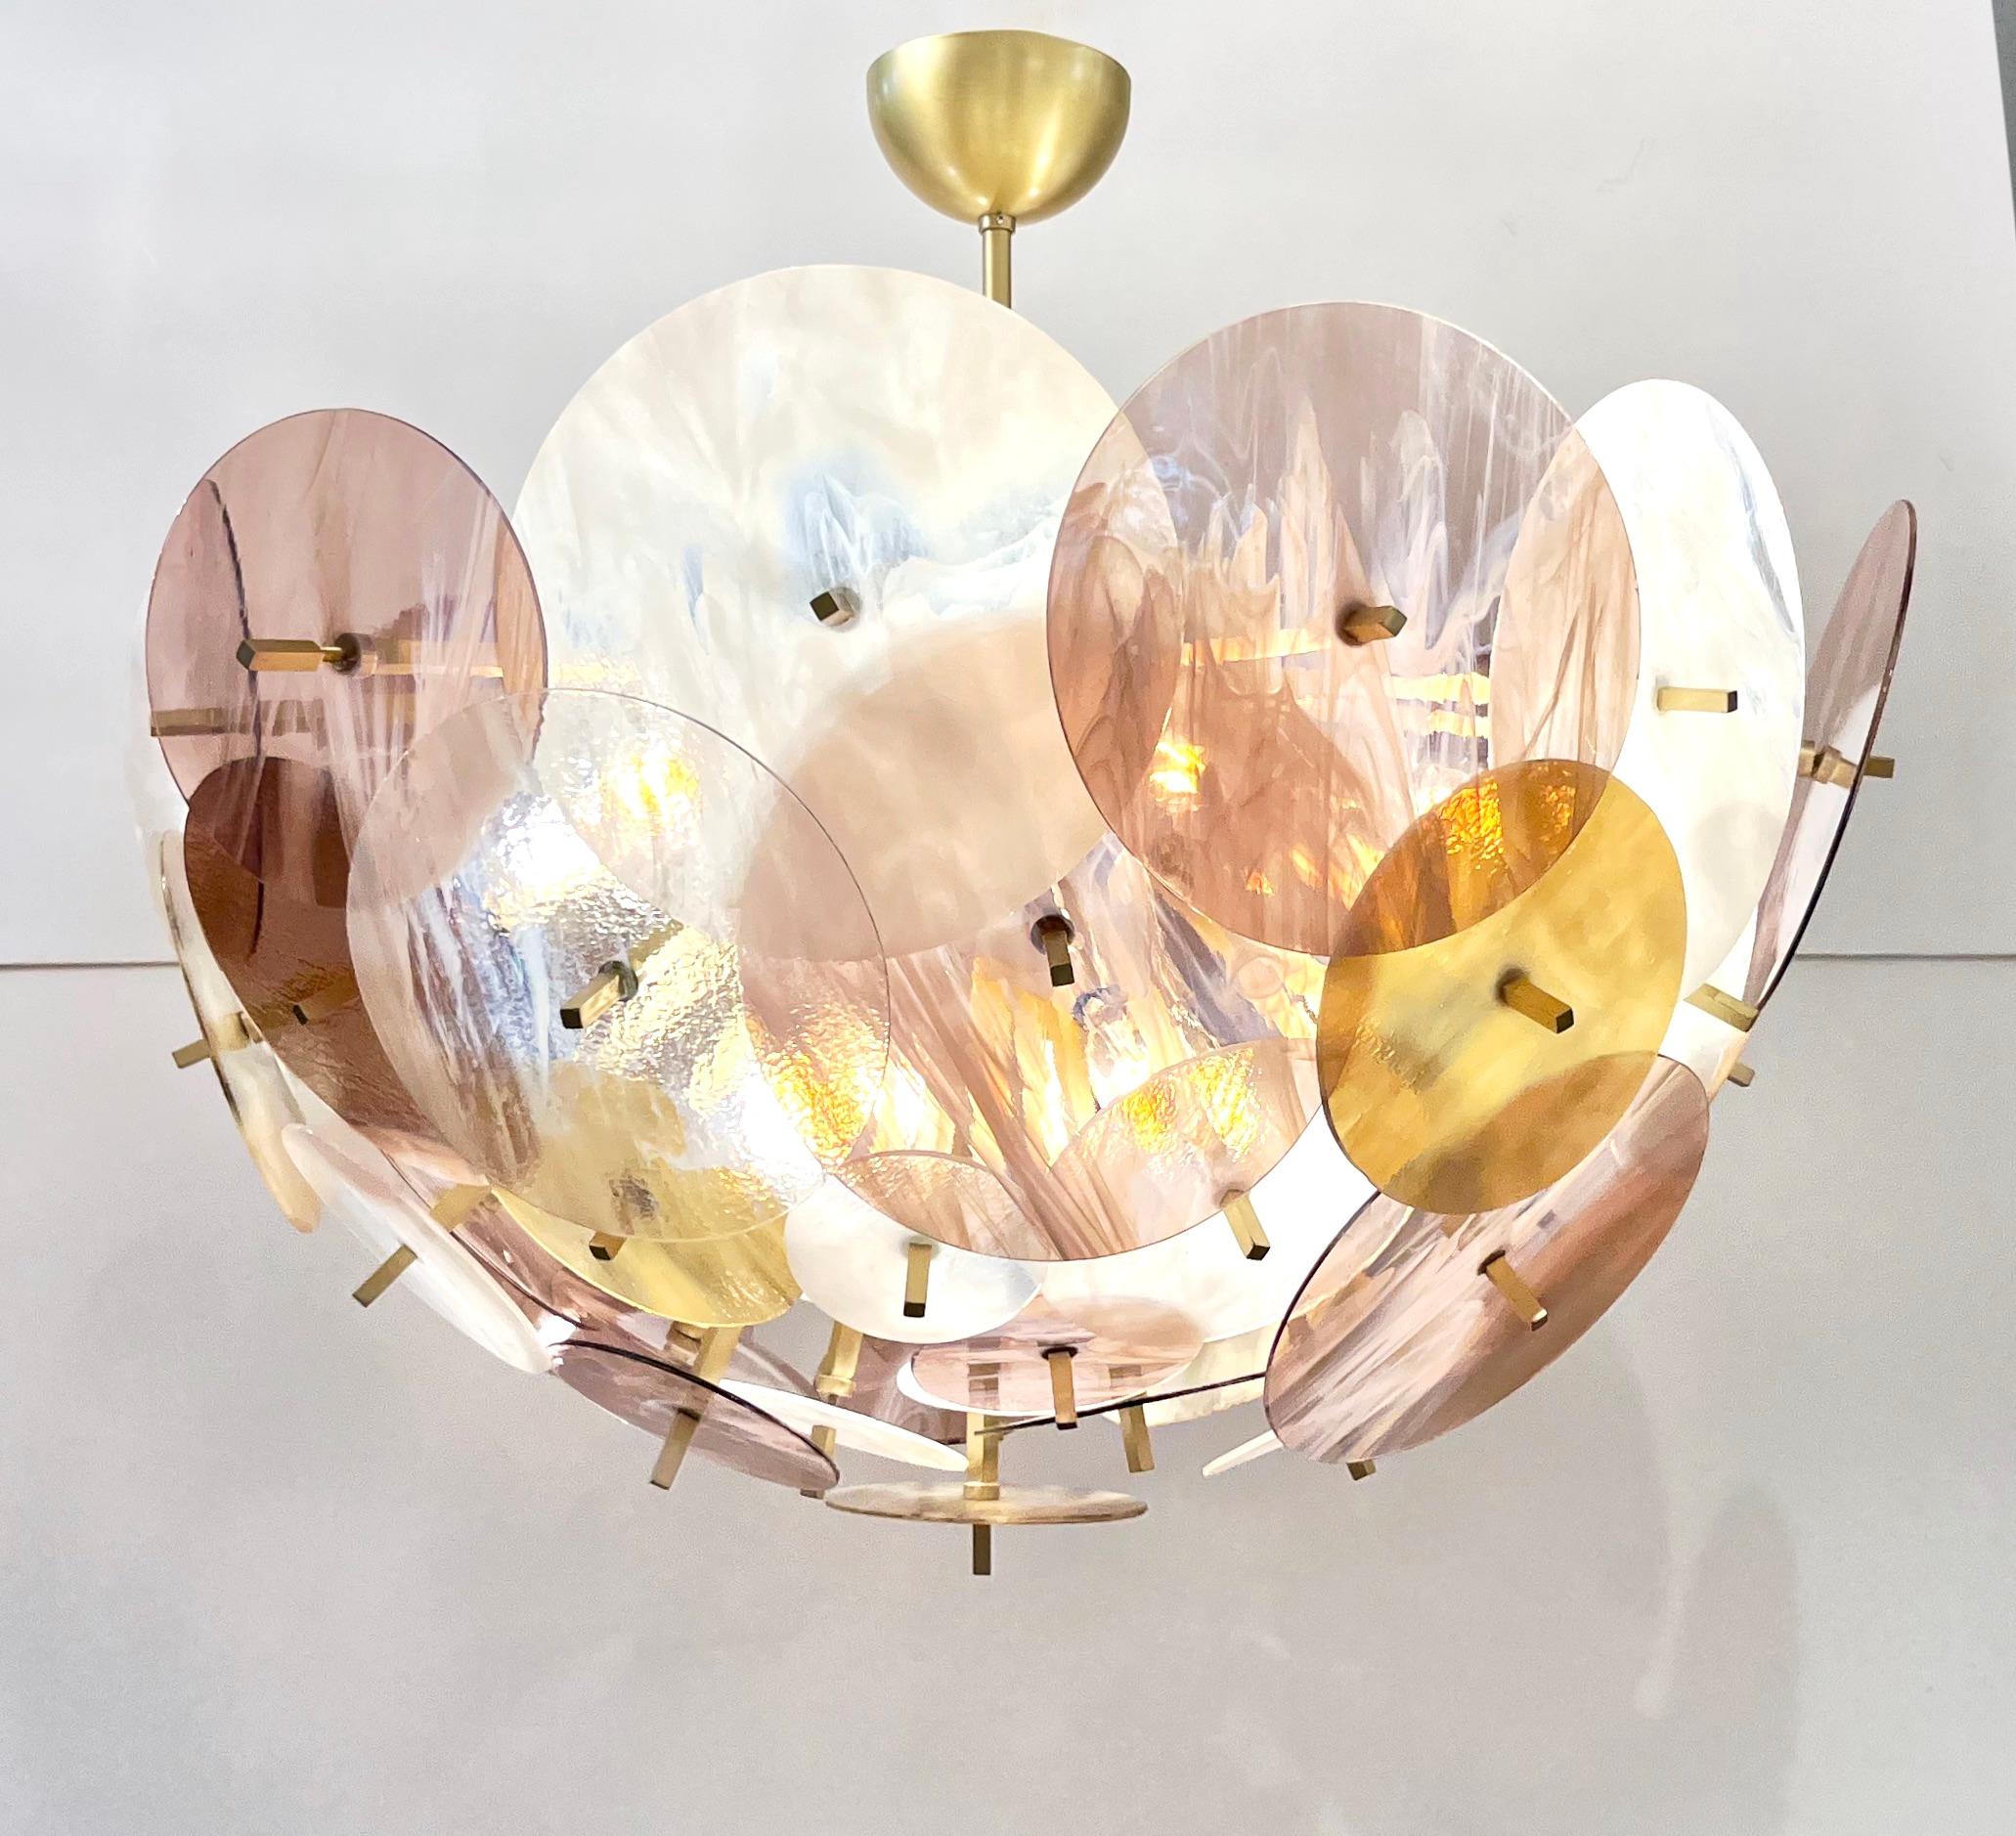 Zeitgenössischer Sputnik-Kronleuchter in ovaler Form, vollständig handgefertigt in Italien, ein verlockendes modernes Design mit einer Struktur aus natürlichem Messing, die aus einer zentralen Halbkugel besteht, die ausladende Metallbaguette-Stäbe